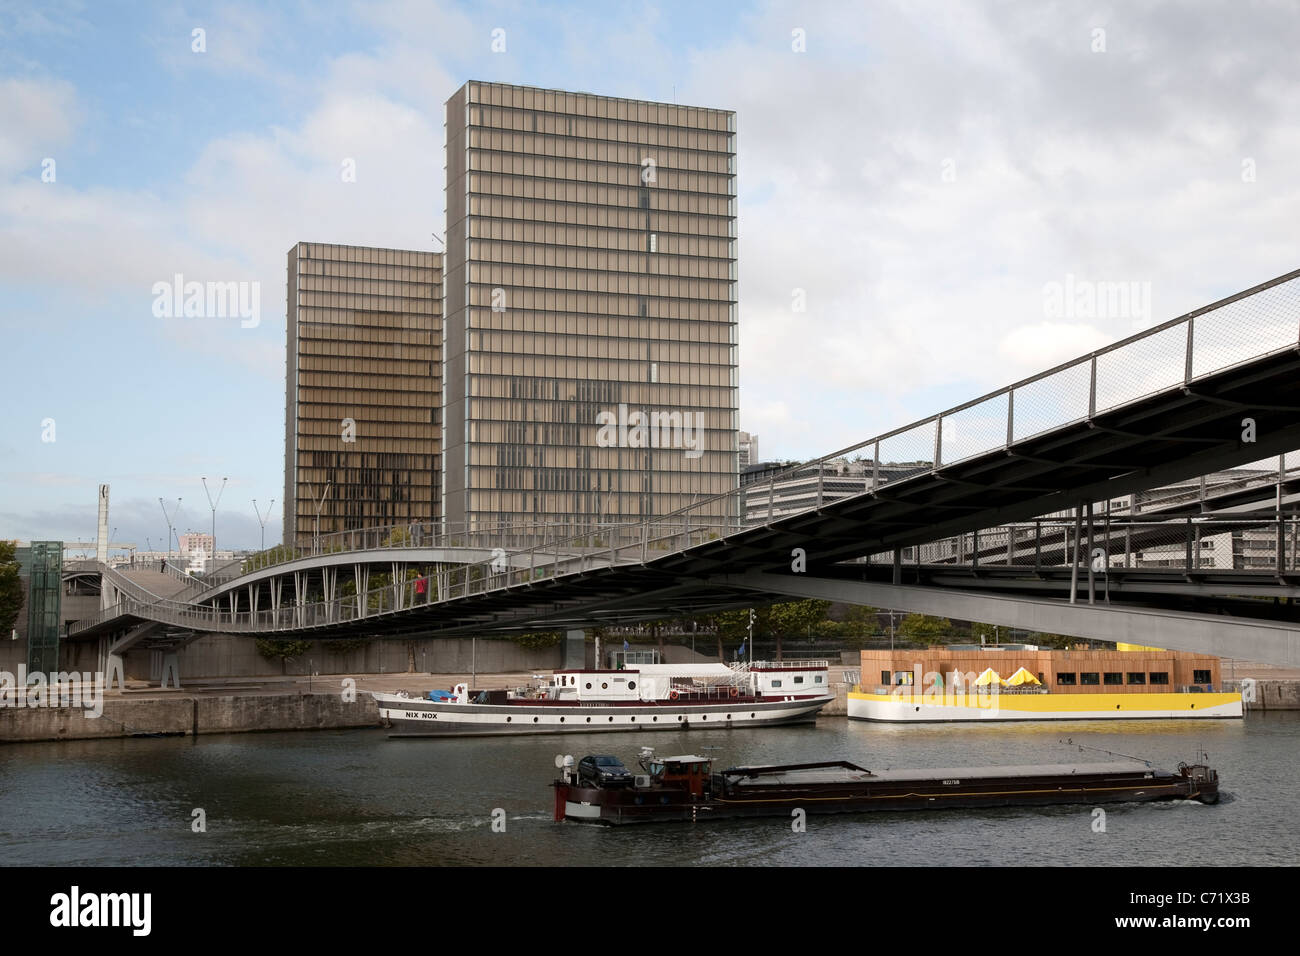 Bibliotheque Nationale de France; Francois Mitterrand; Passerelle Simone de Beauvoir Bridge; River Seine; Paris, France Stock Photo